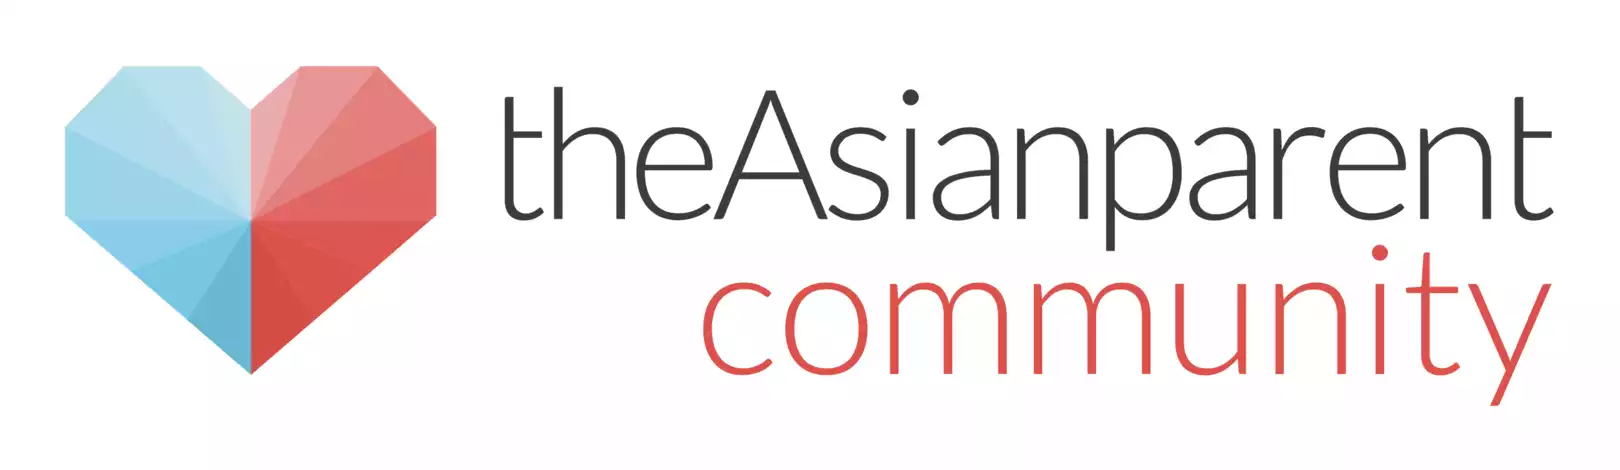 The Asian Parent Community